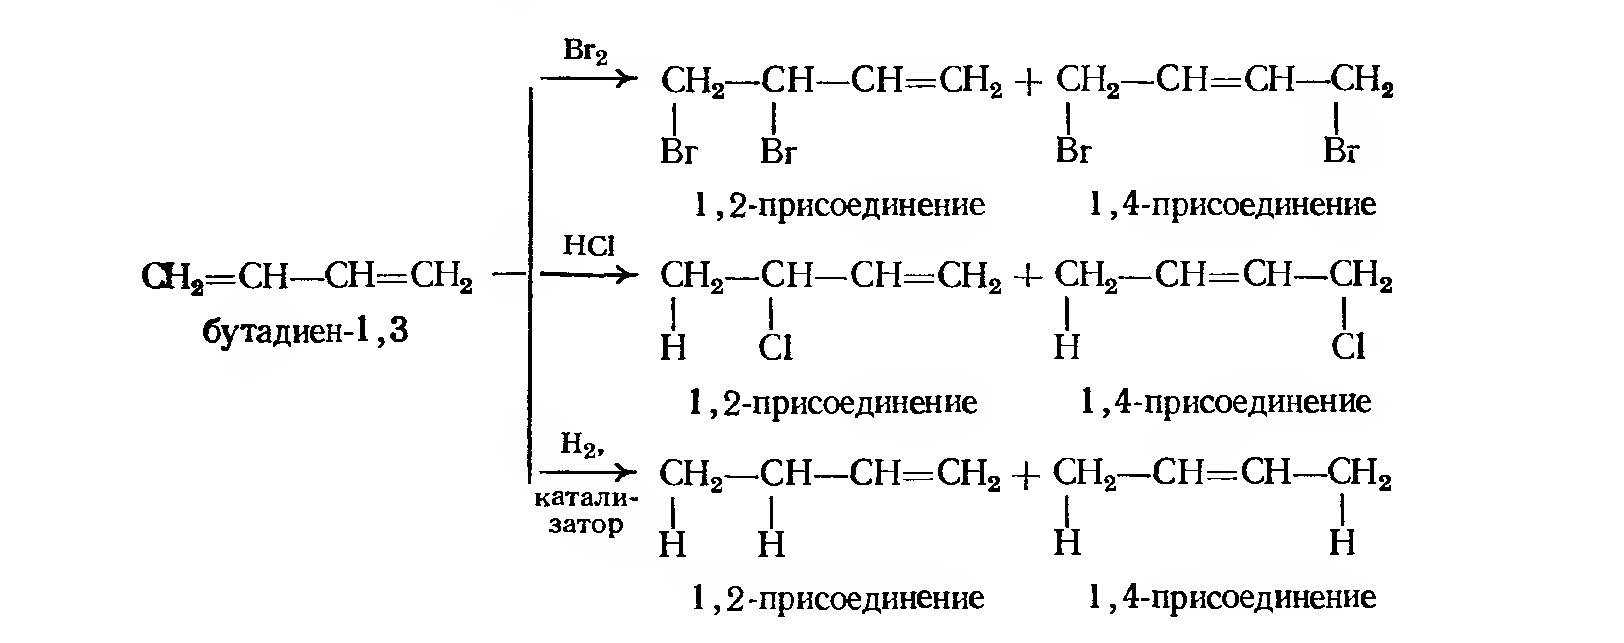 1 2 дивинил бутан. Схема полимеризации хлоропрена. Присоединение hbr к бутадиену 1,3. Гидробромирование бутадиена-1.3. Бутадиен 13 и бромоводород.